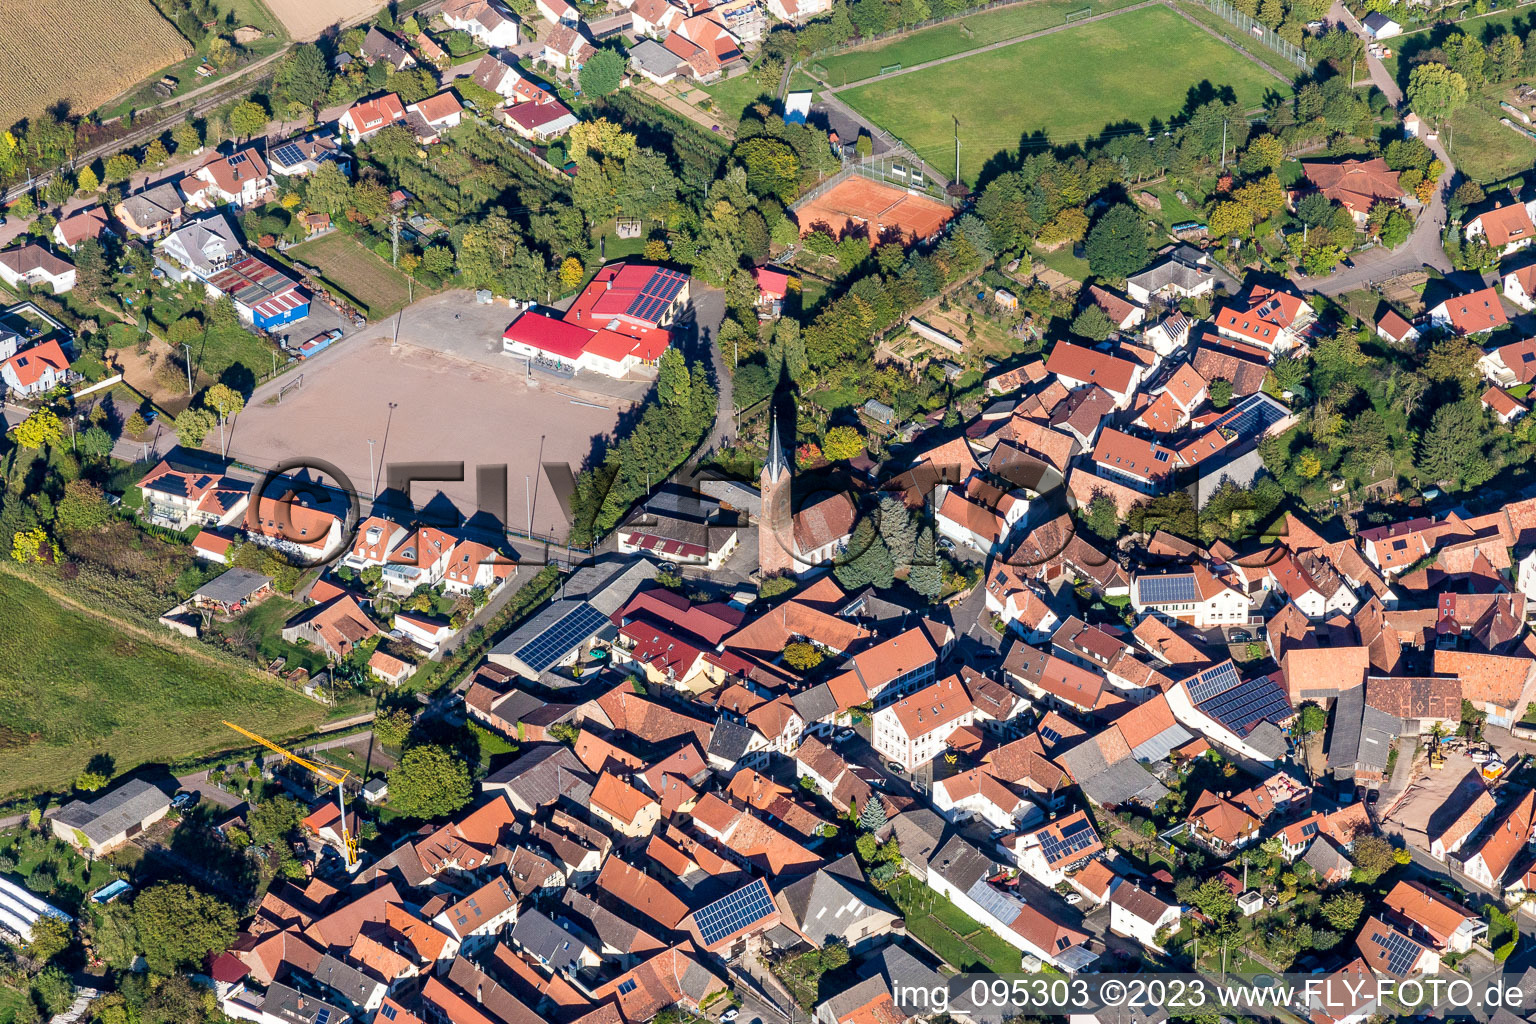 Vue aérienne de Terrain de sport - terrain de football à le quartier Drusweiler in Kapellen-Drusweiler dans le département Rhénanie-Palatinat, Allemagne